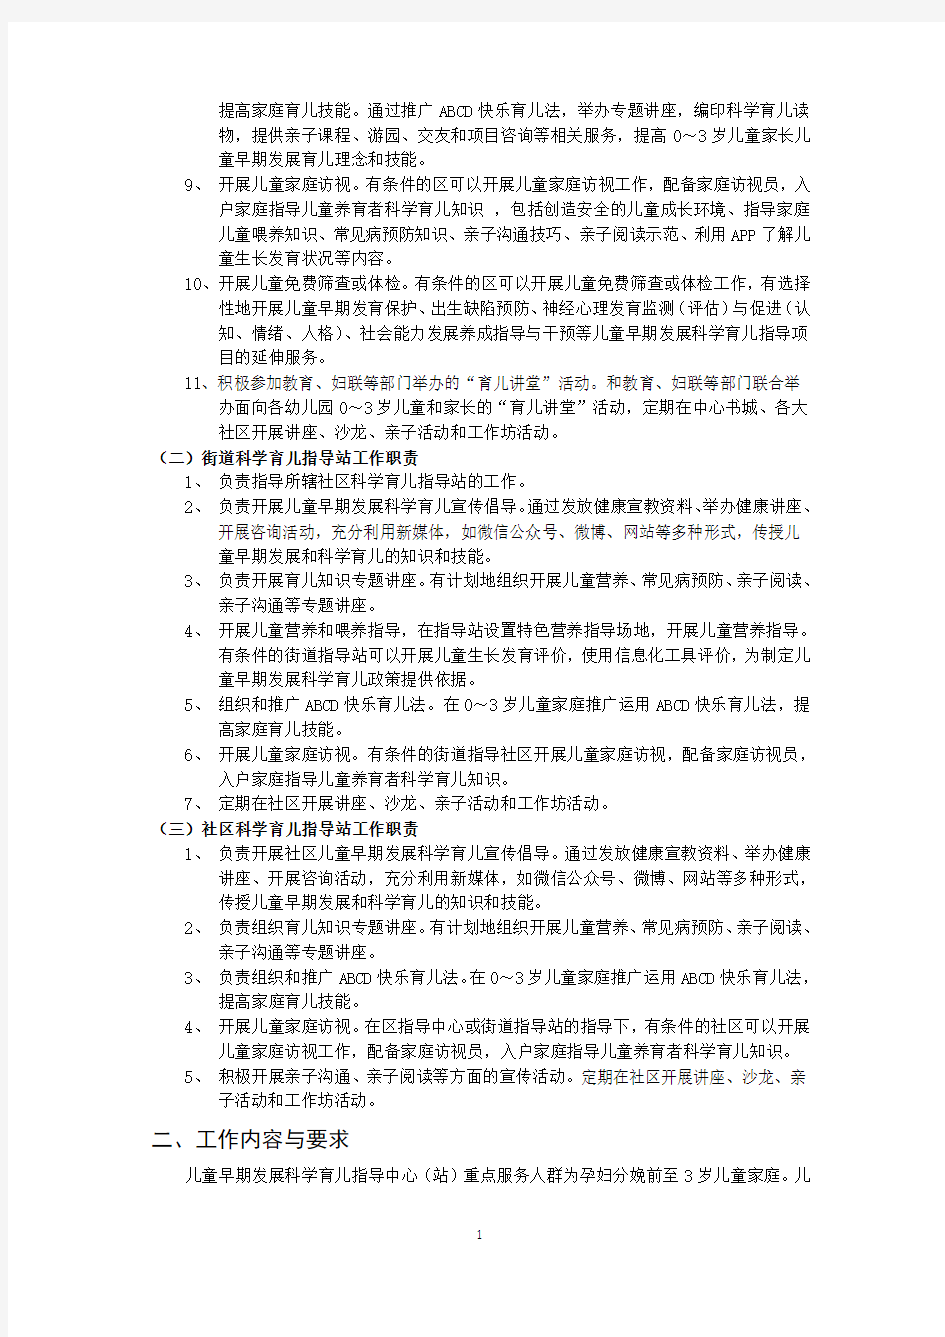 深圳市儿童早期发展科学育儿指导中心(站)工作规范